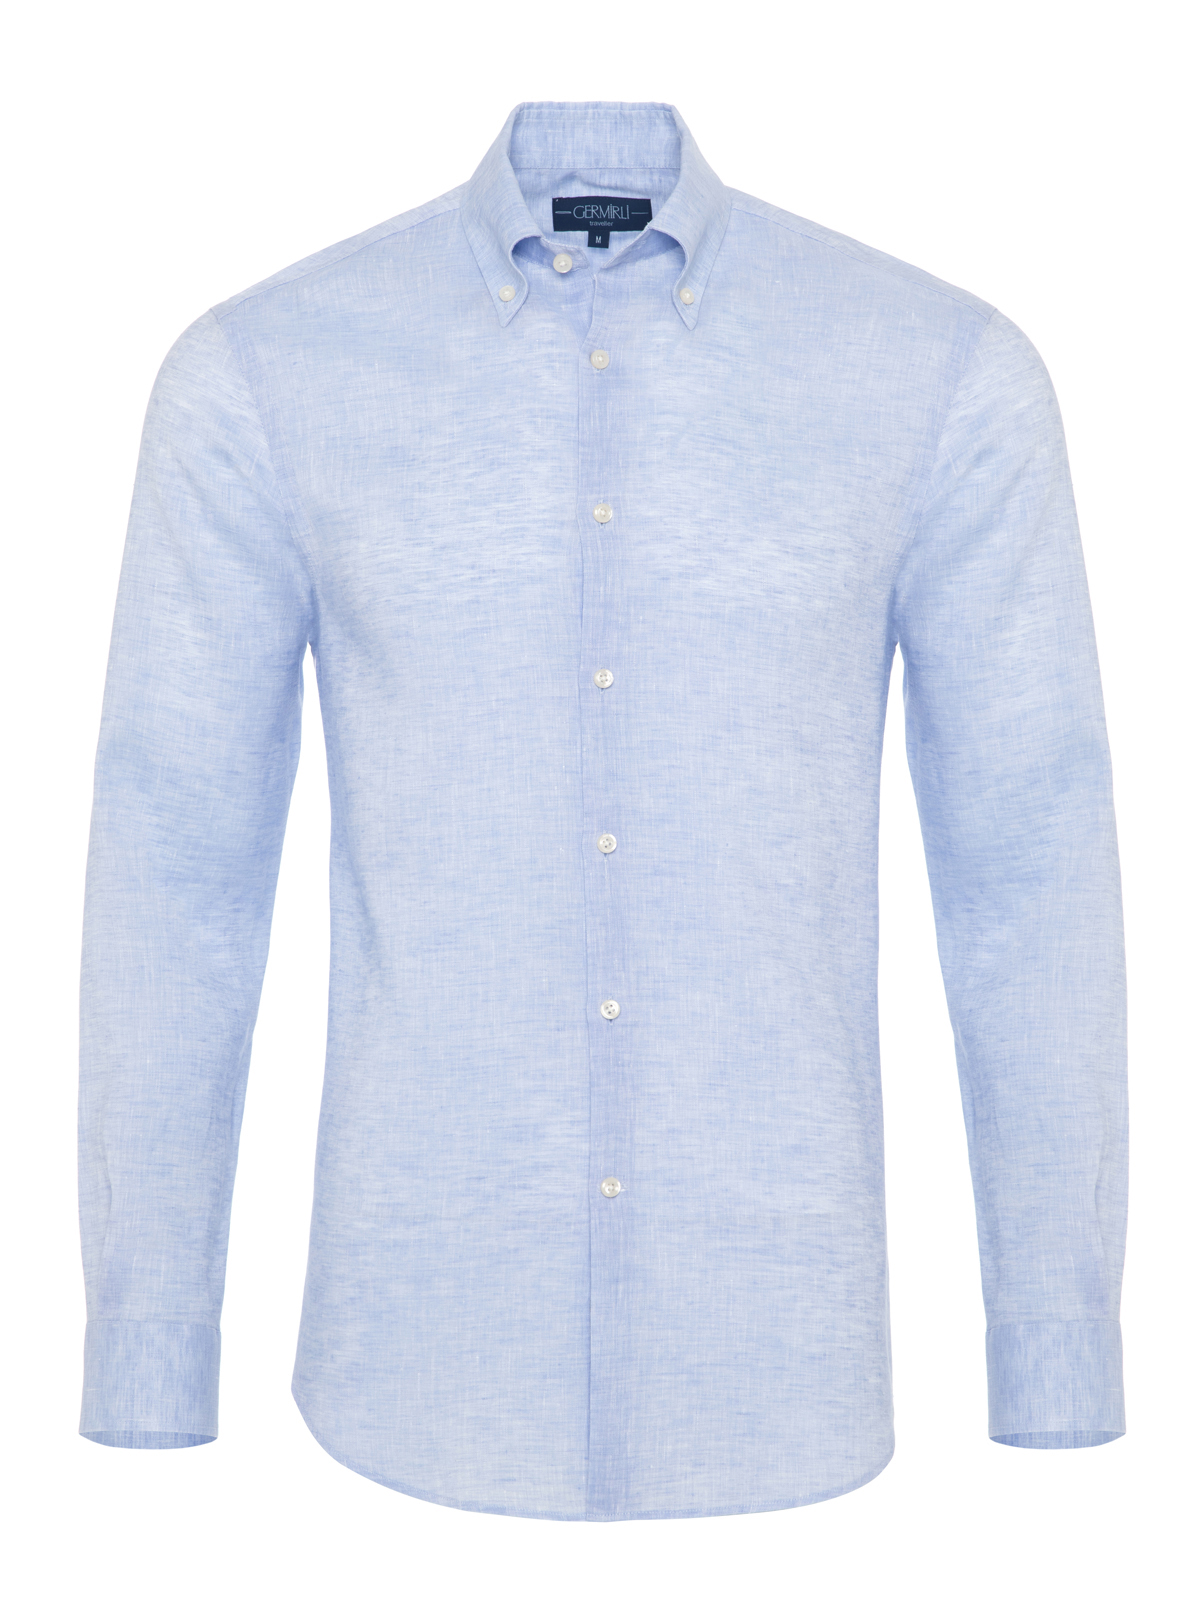 Germirli - Germirli Non Iron Light Blue Linen Button Down Tailor Fit Journey Shirt